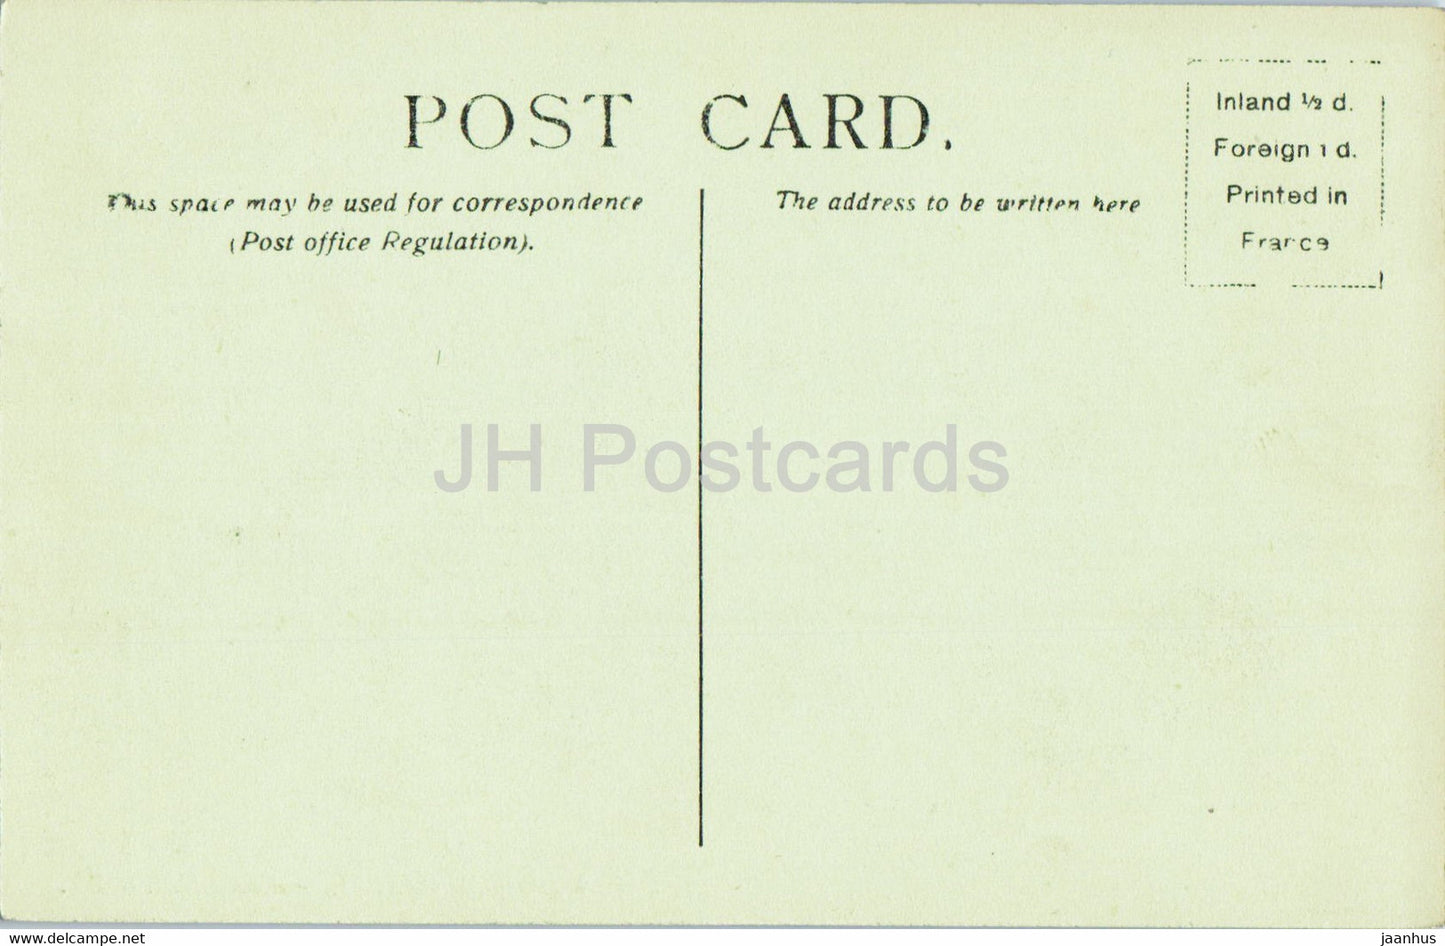 Windsor Castle - Castle Hill - 904 - alte Postkarte - England - Vereinigtes Königreich - unbenutzt